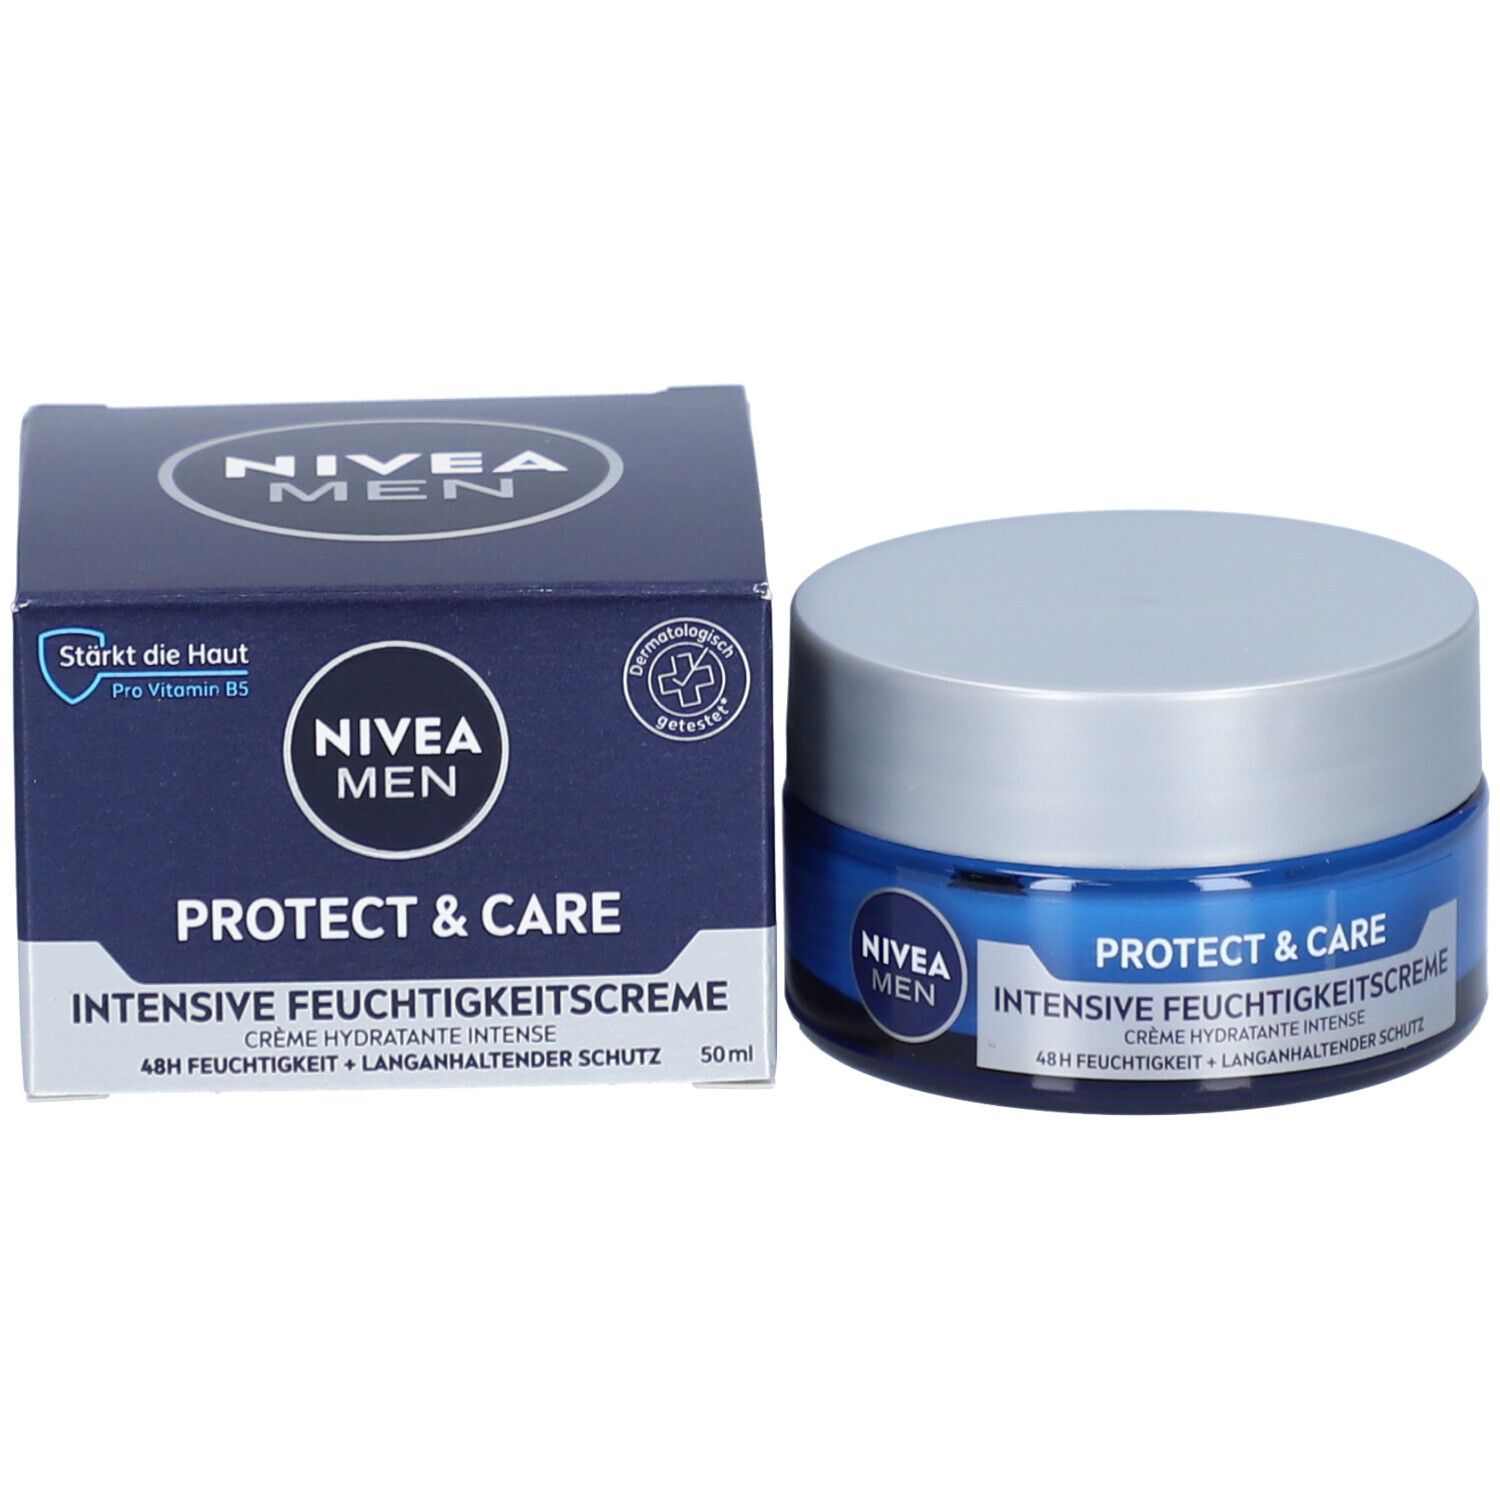 NIVEA® MEN Protect & Care Intensive Feuchtigkeitscreme